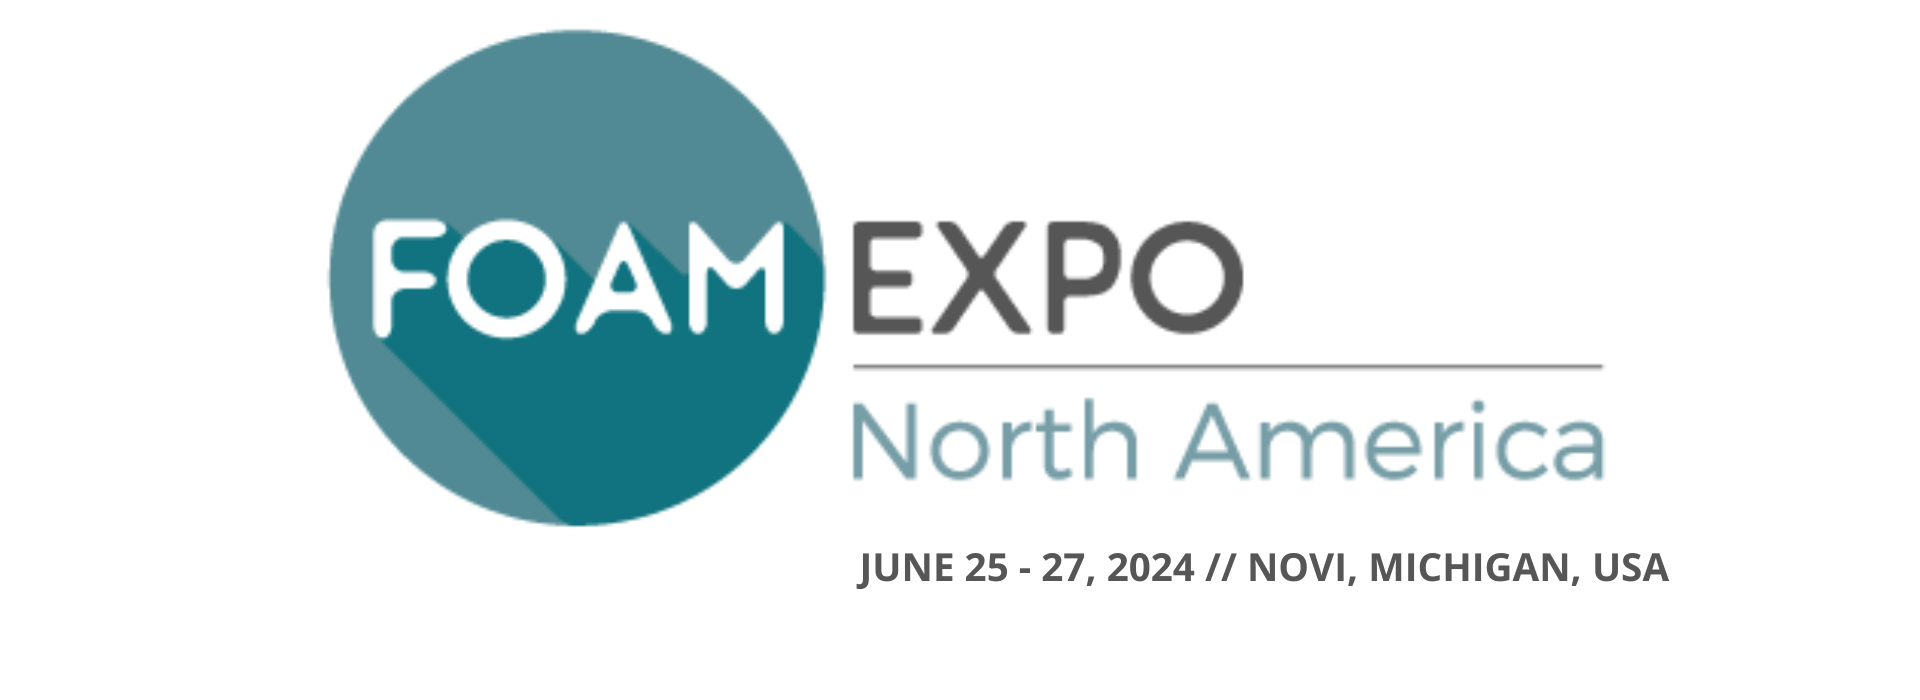 FOAM EXPO NORTH AMERICA 2024 